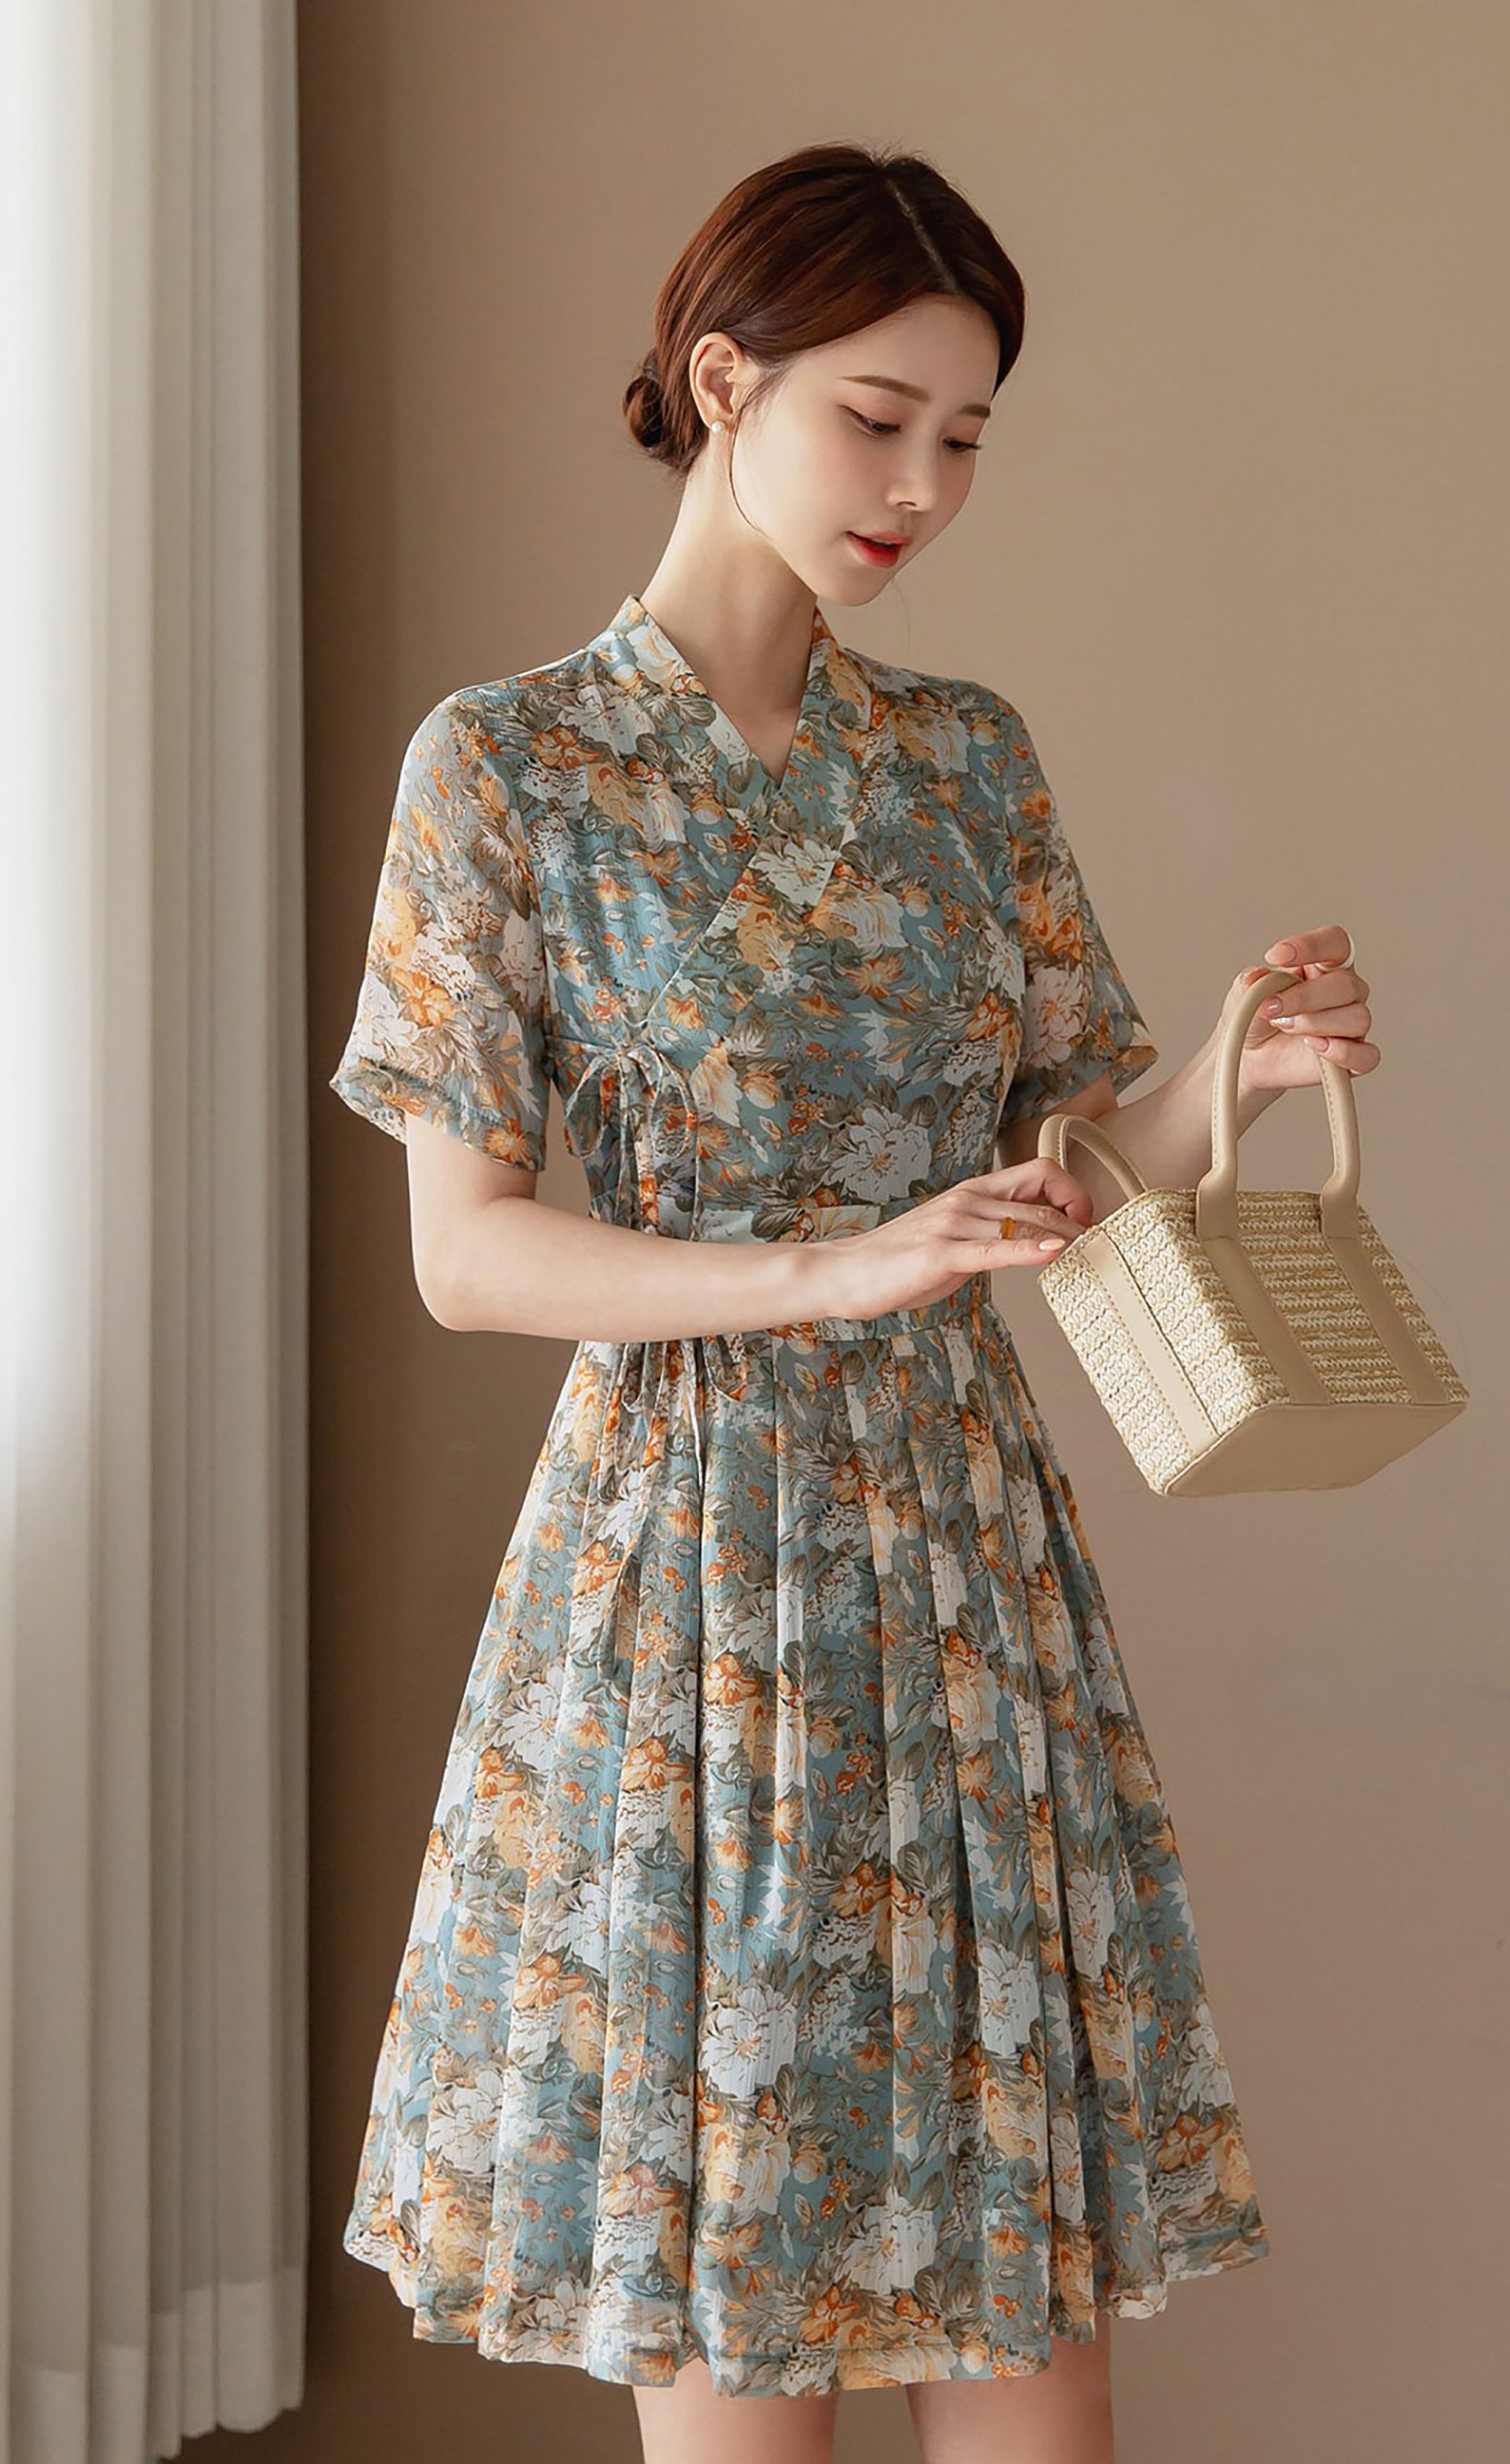 Women's Modern Hanbok Dress Mint Flower Orange Wrapped - Etsy